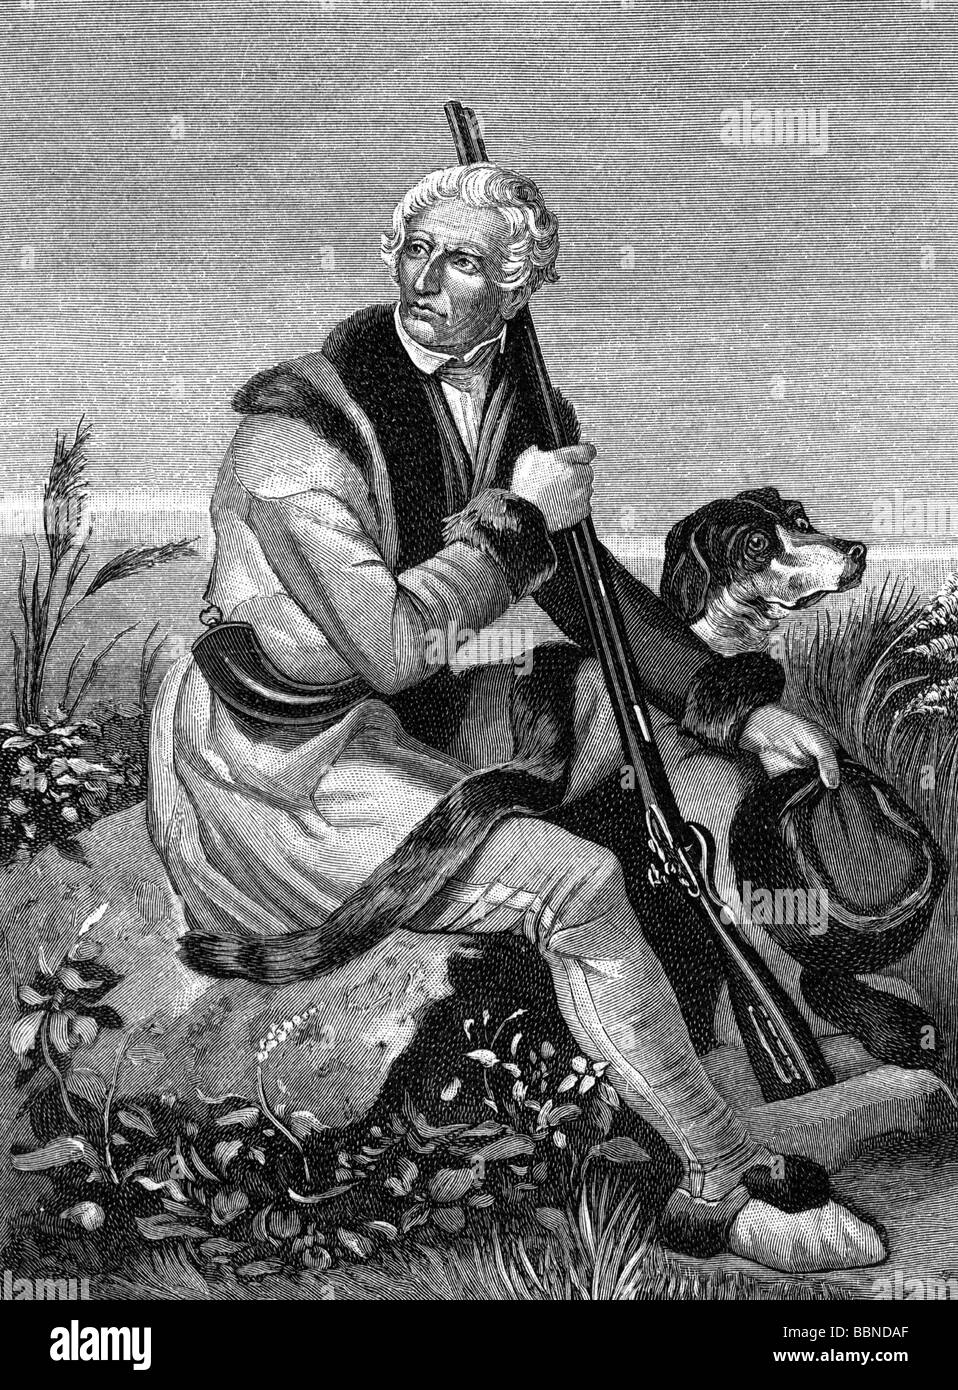 Boone, Daniel, 2.11.1734 - 26.9.1820, amerikanischer Pionier und Jäger, volle Länge, nach Malerei von Alonzo Chappel, Holzgravur, 19. Jahrhundert, Stockfoto